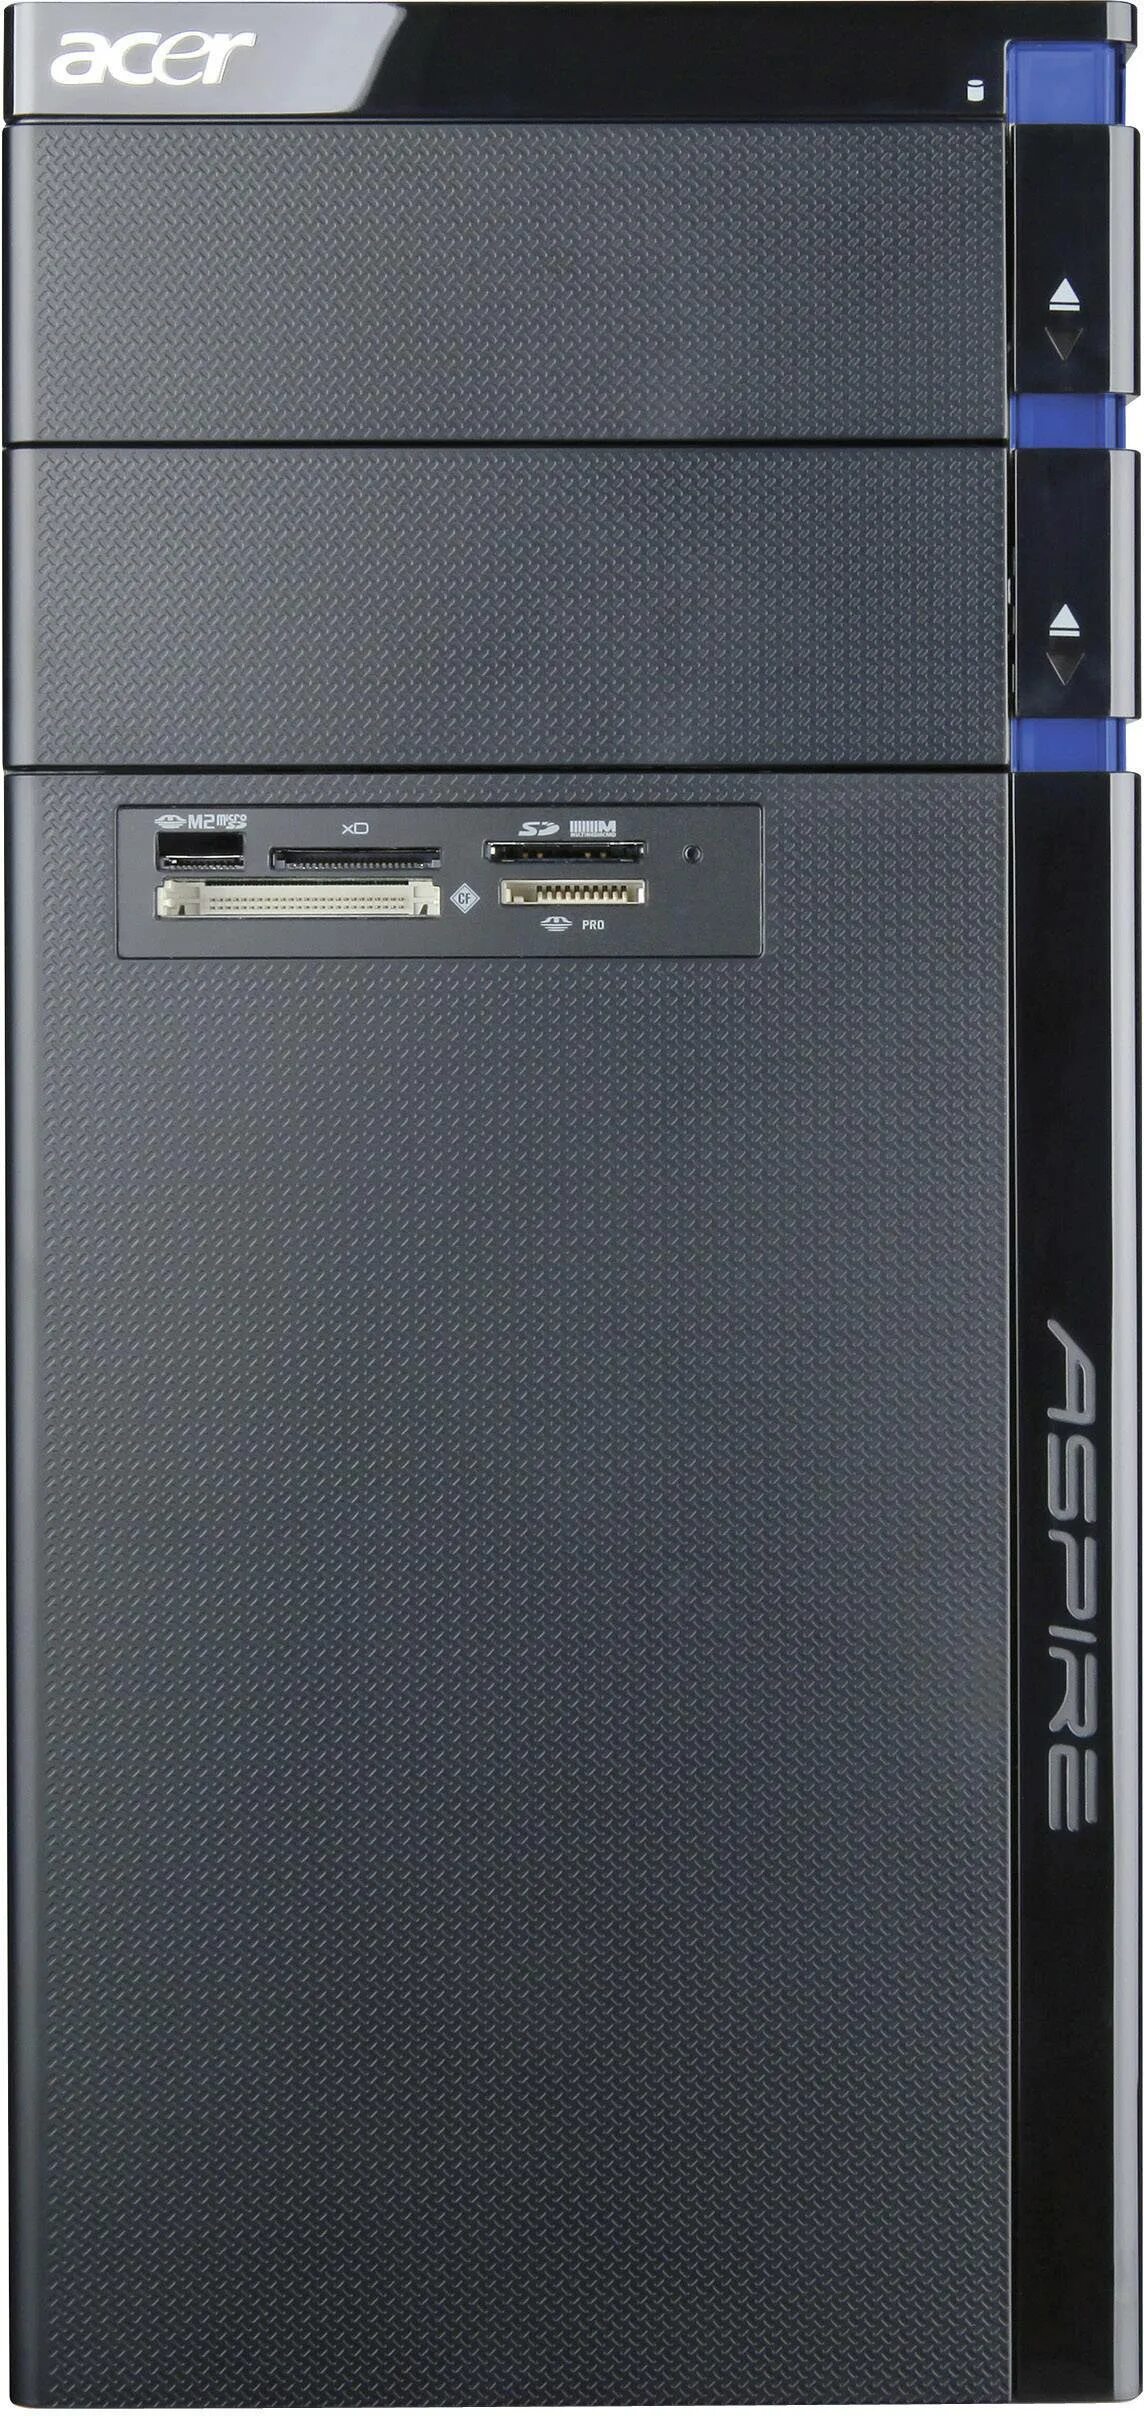 Компьютер Acer Aspire m5400. Acer Aspire m3910 системный блок. Системный блок Acer Aspire m3400. ПК Acer Aspire m3920.